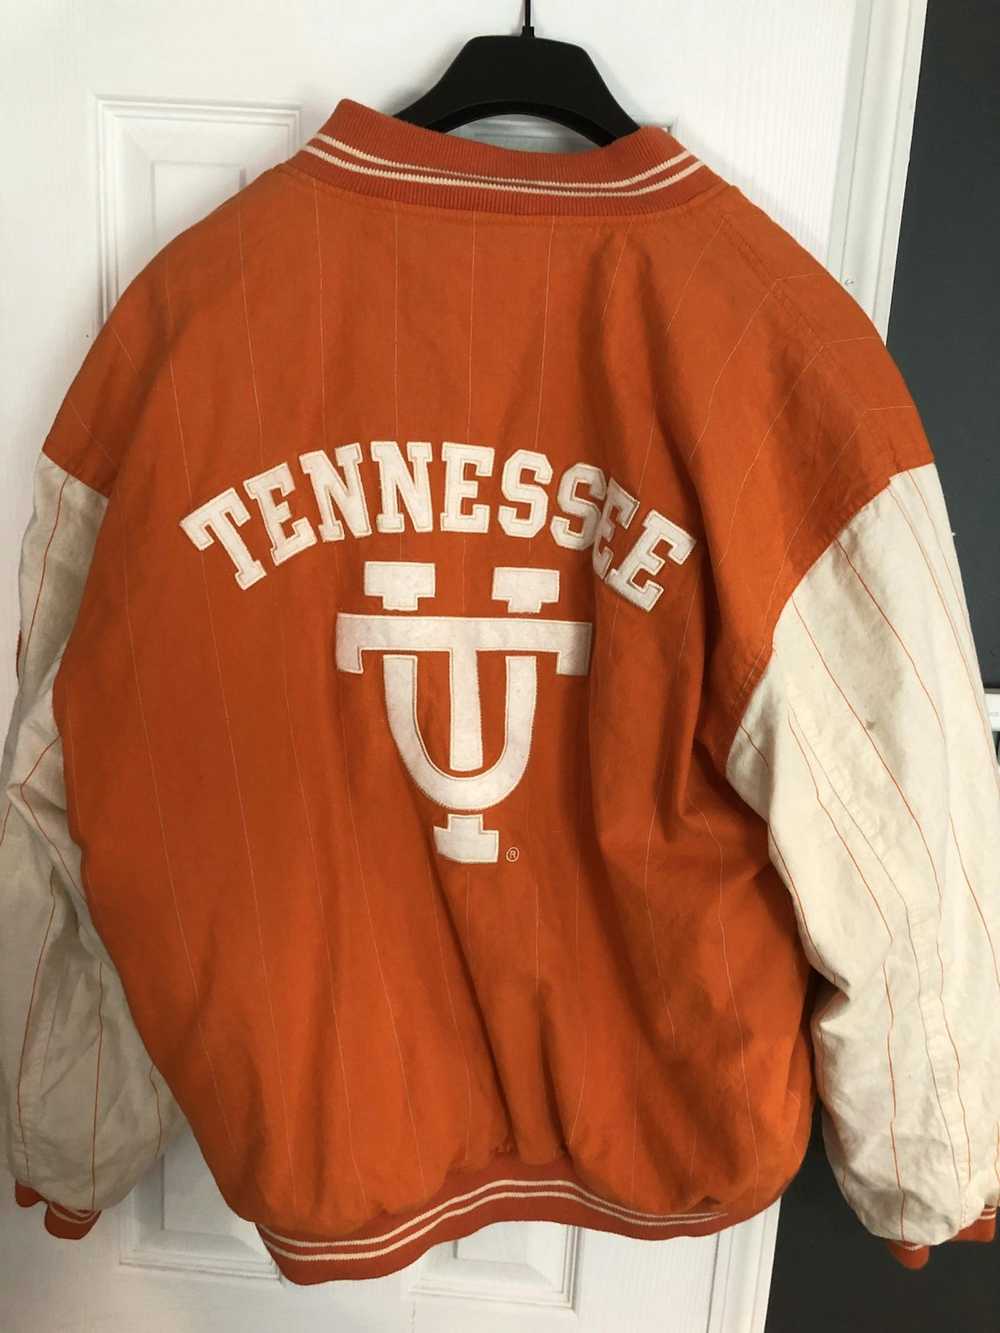 Mirage Vintage Tennessee Jacket - image 1